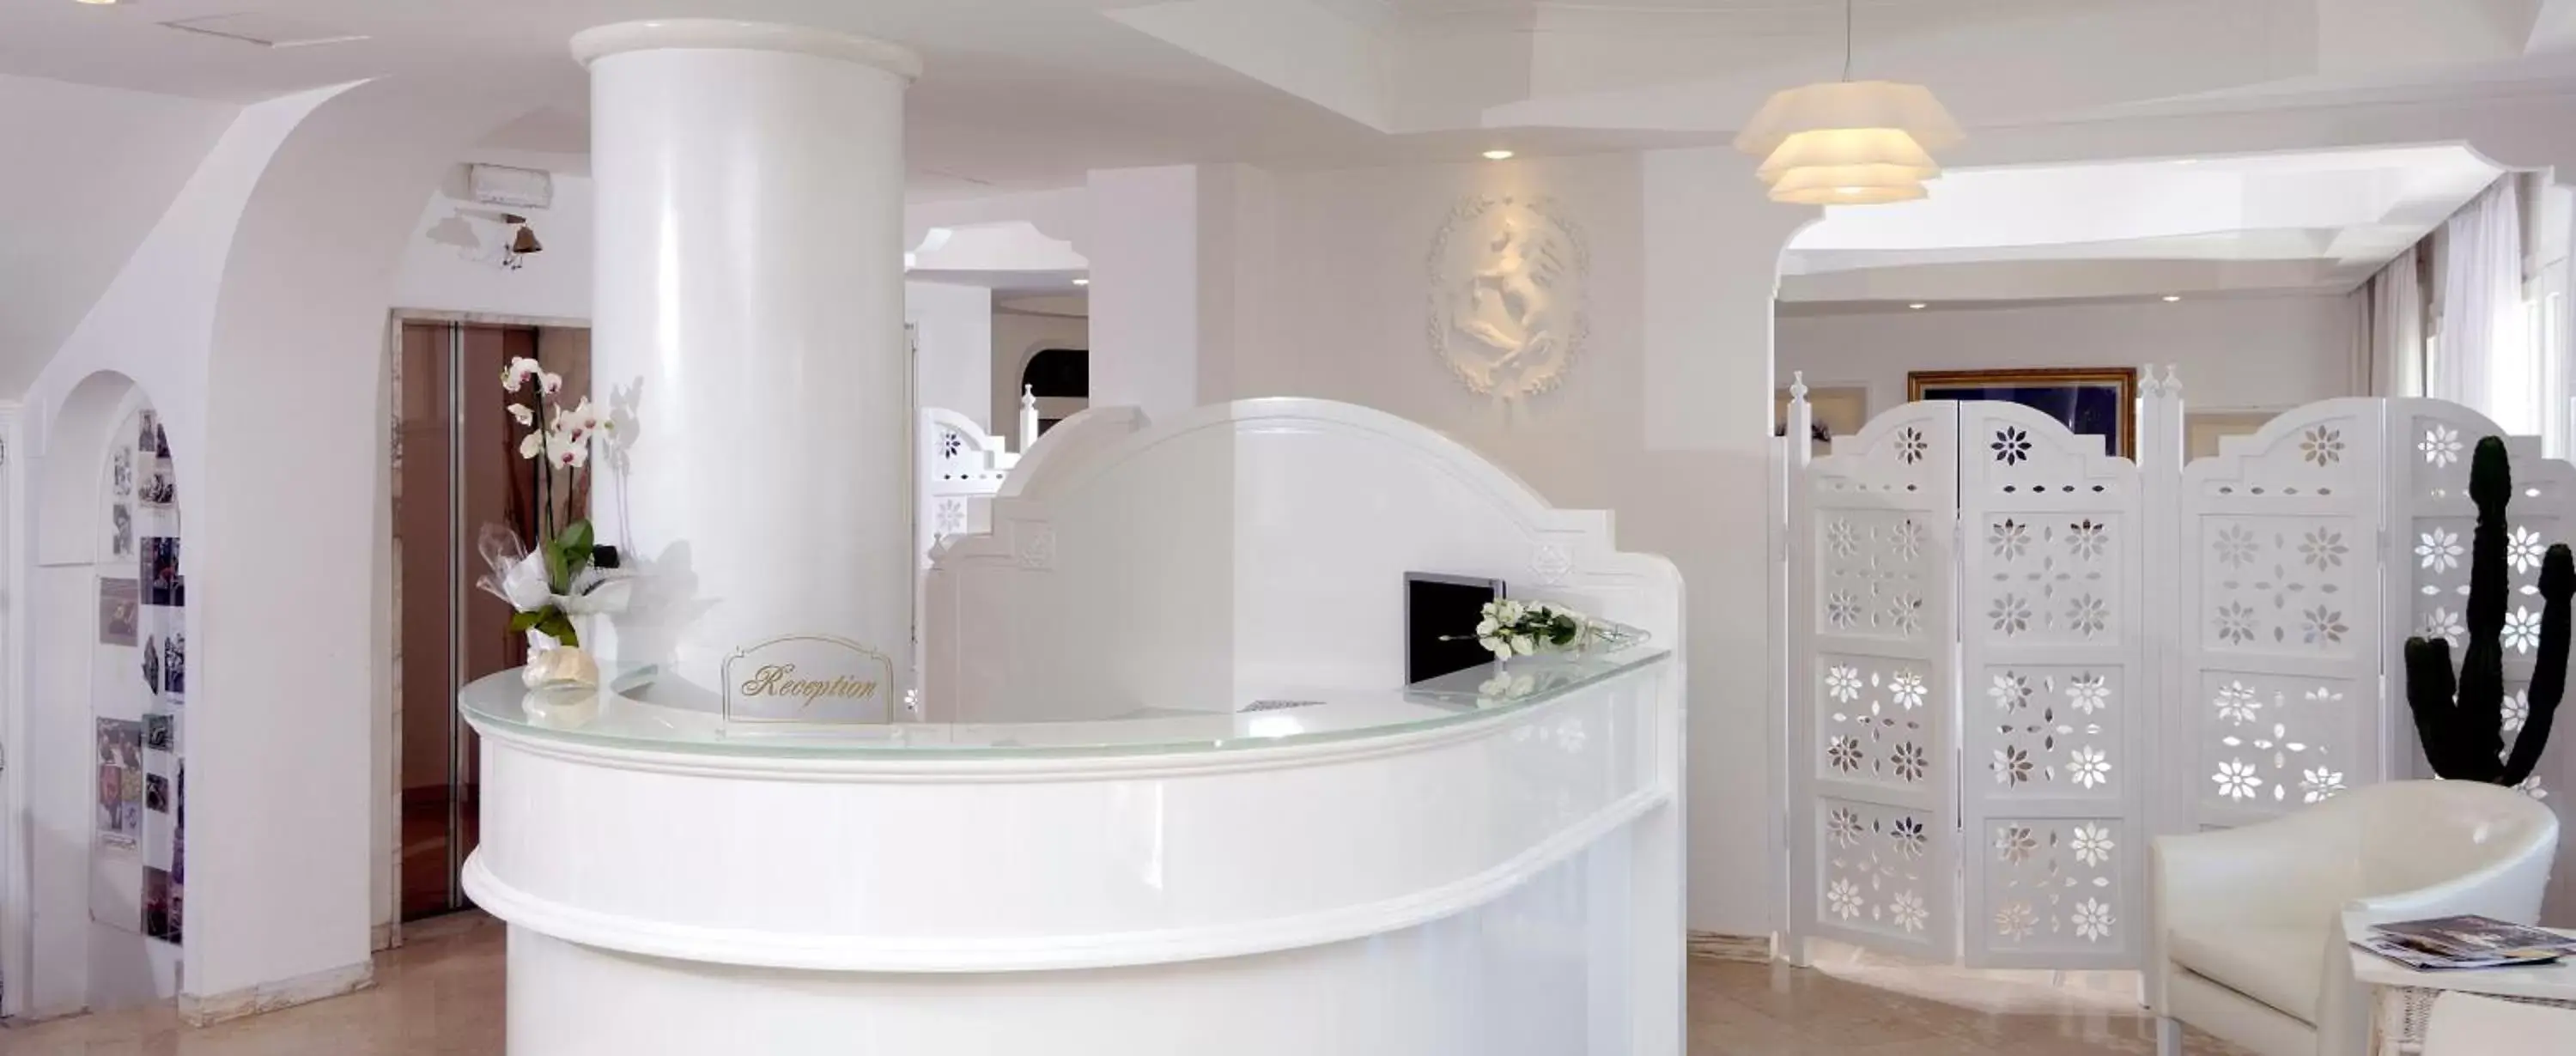 Lobby or reception, Bathroom in Hotel Al Cavallino Bianco